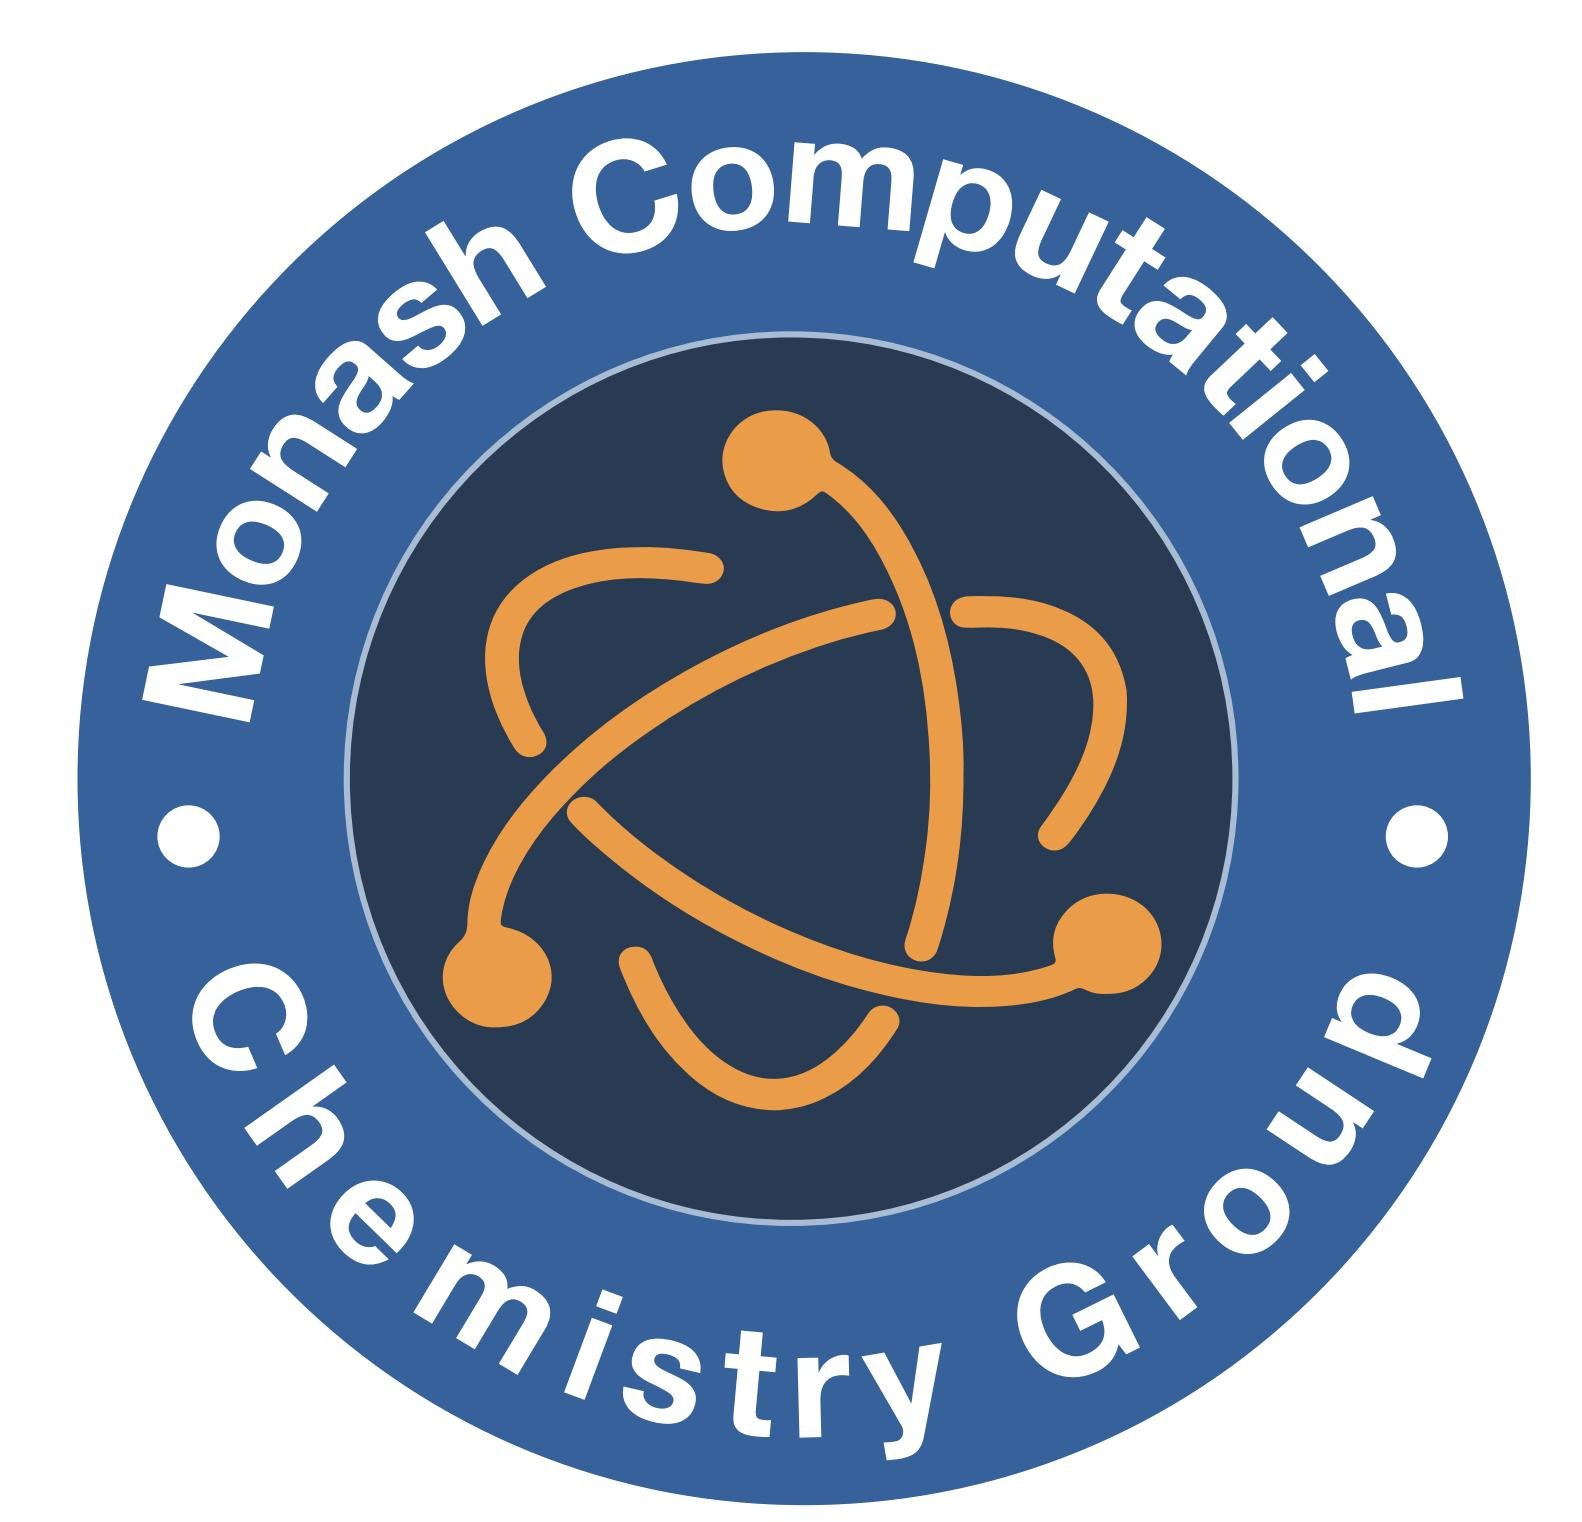 We are computational chemistry group at Monash University.